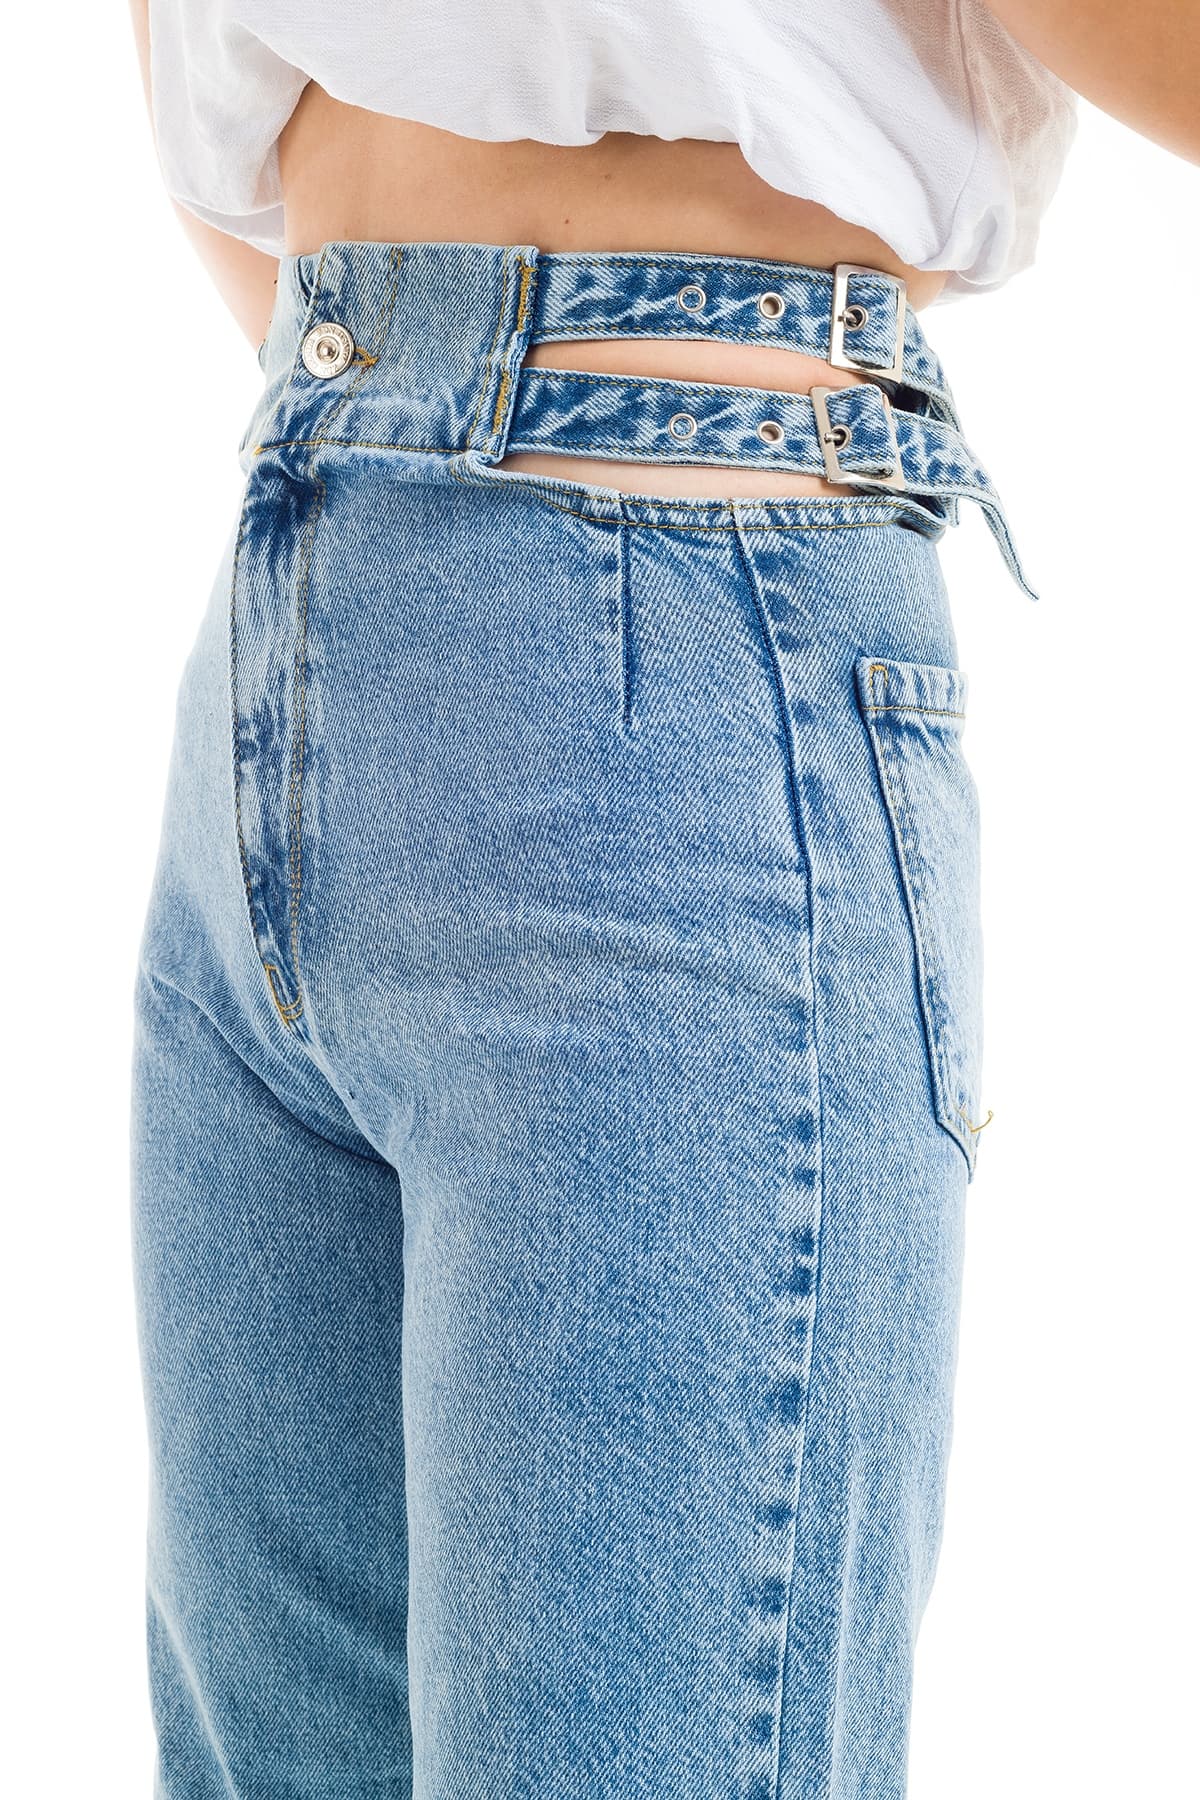 ZDN 9209 Yandan Kemer Detaylı Dekolteli Yüksek Bel Kadın Kot Pantolon